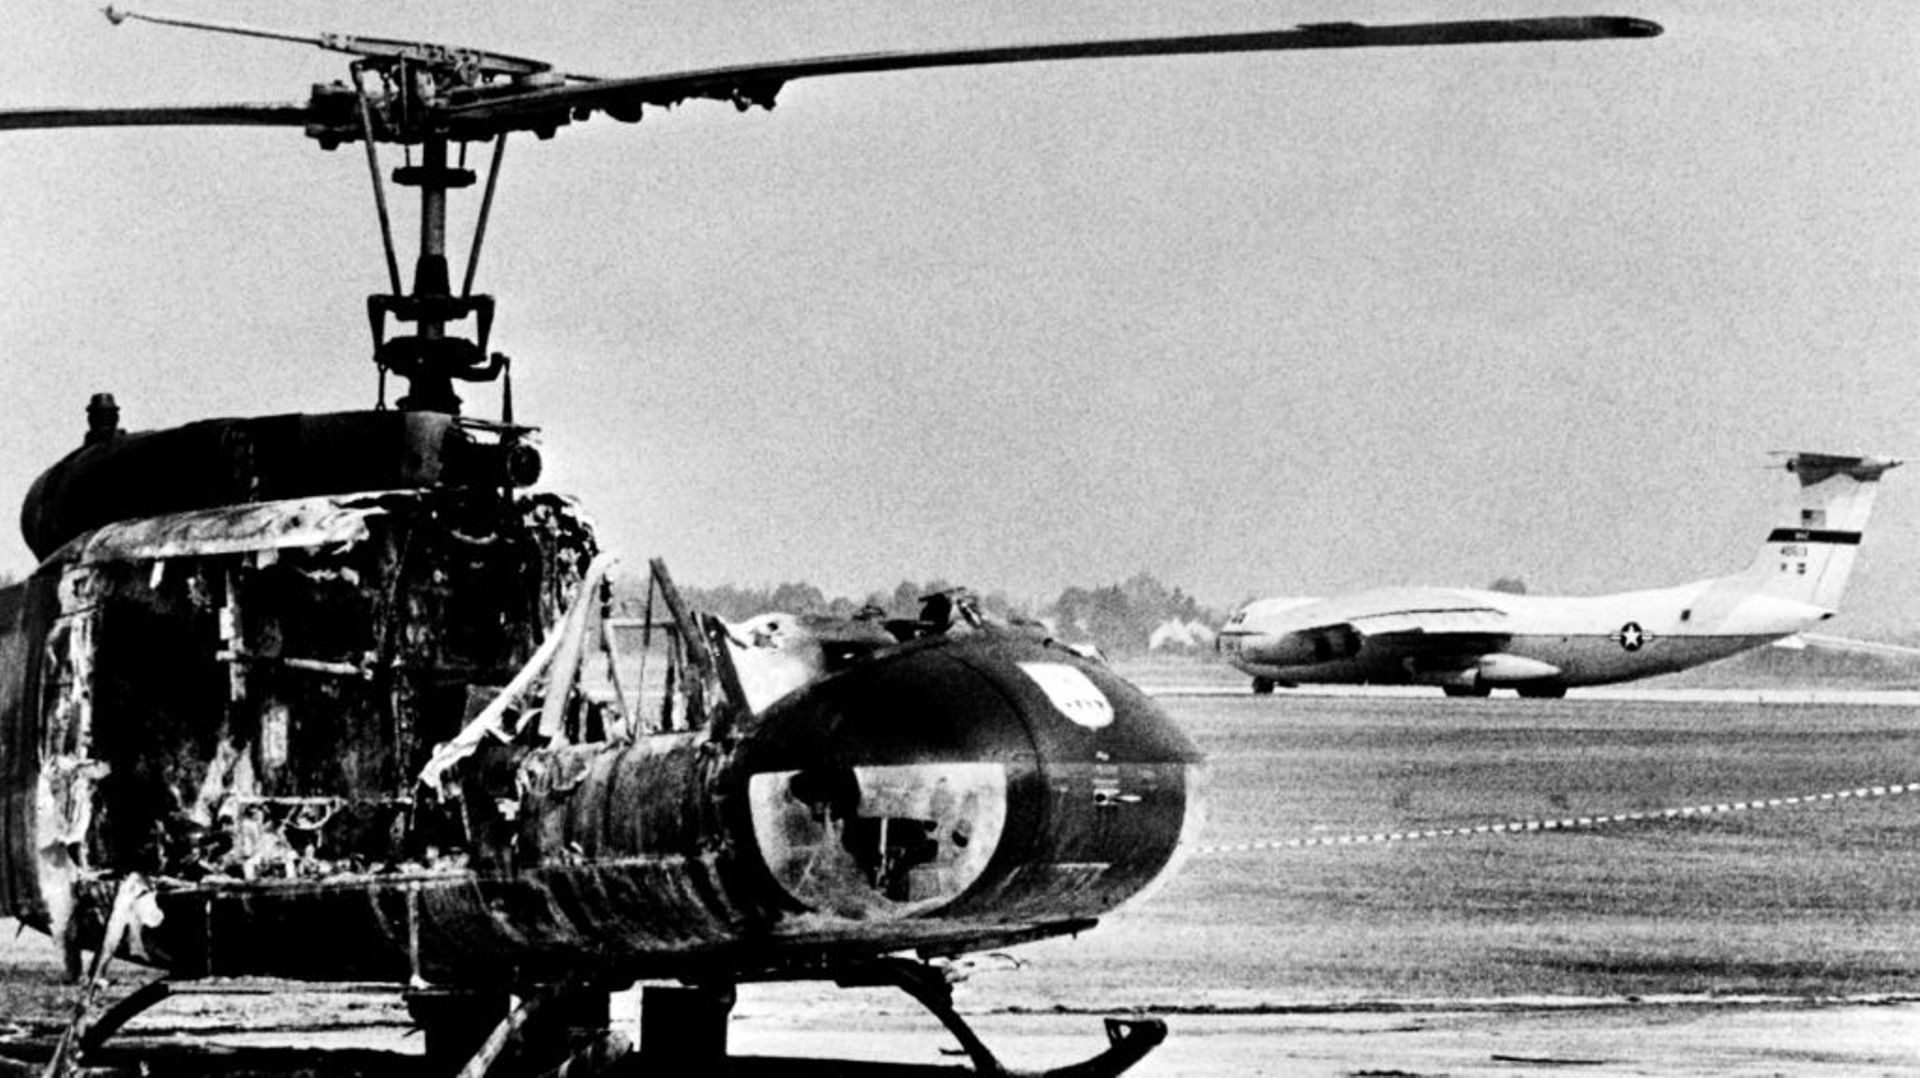 Un hélicoptère de l'armée incendié sur la base aérienne de Fuerstenfeldbruck, le 7 septembre 1972, après une attaque terroriste palestinienne pendant les Jeux Olympiques de Munich